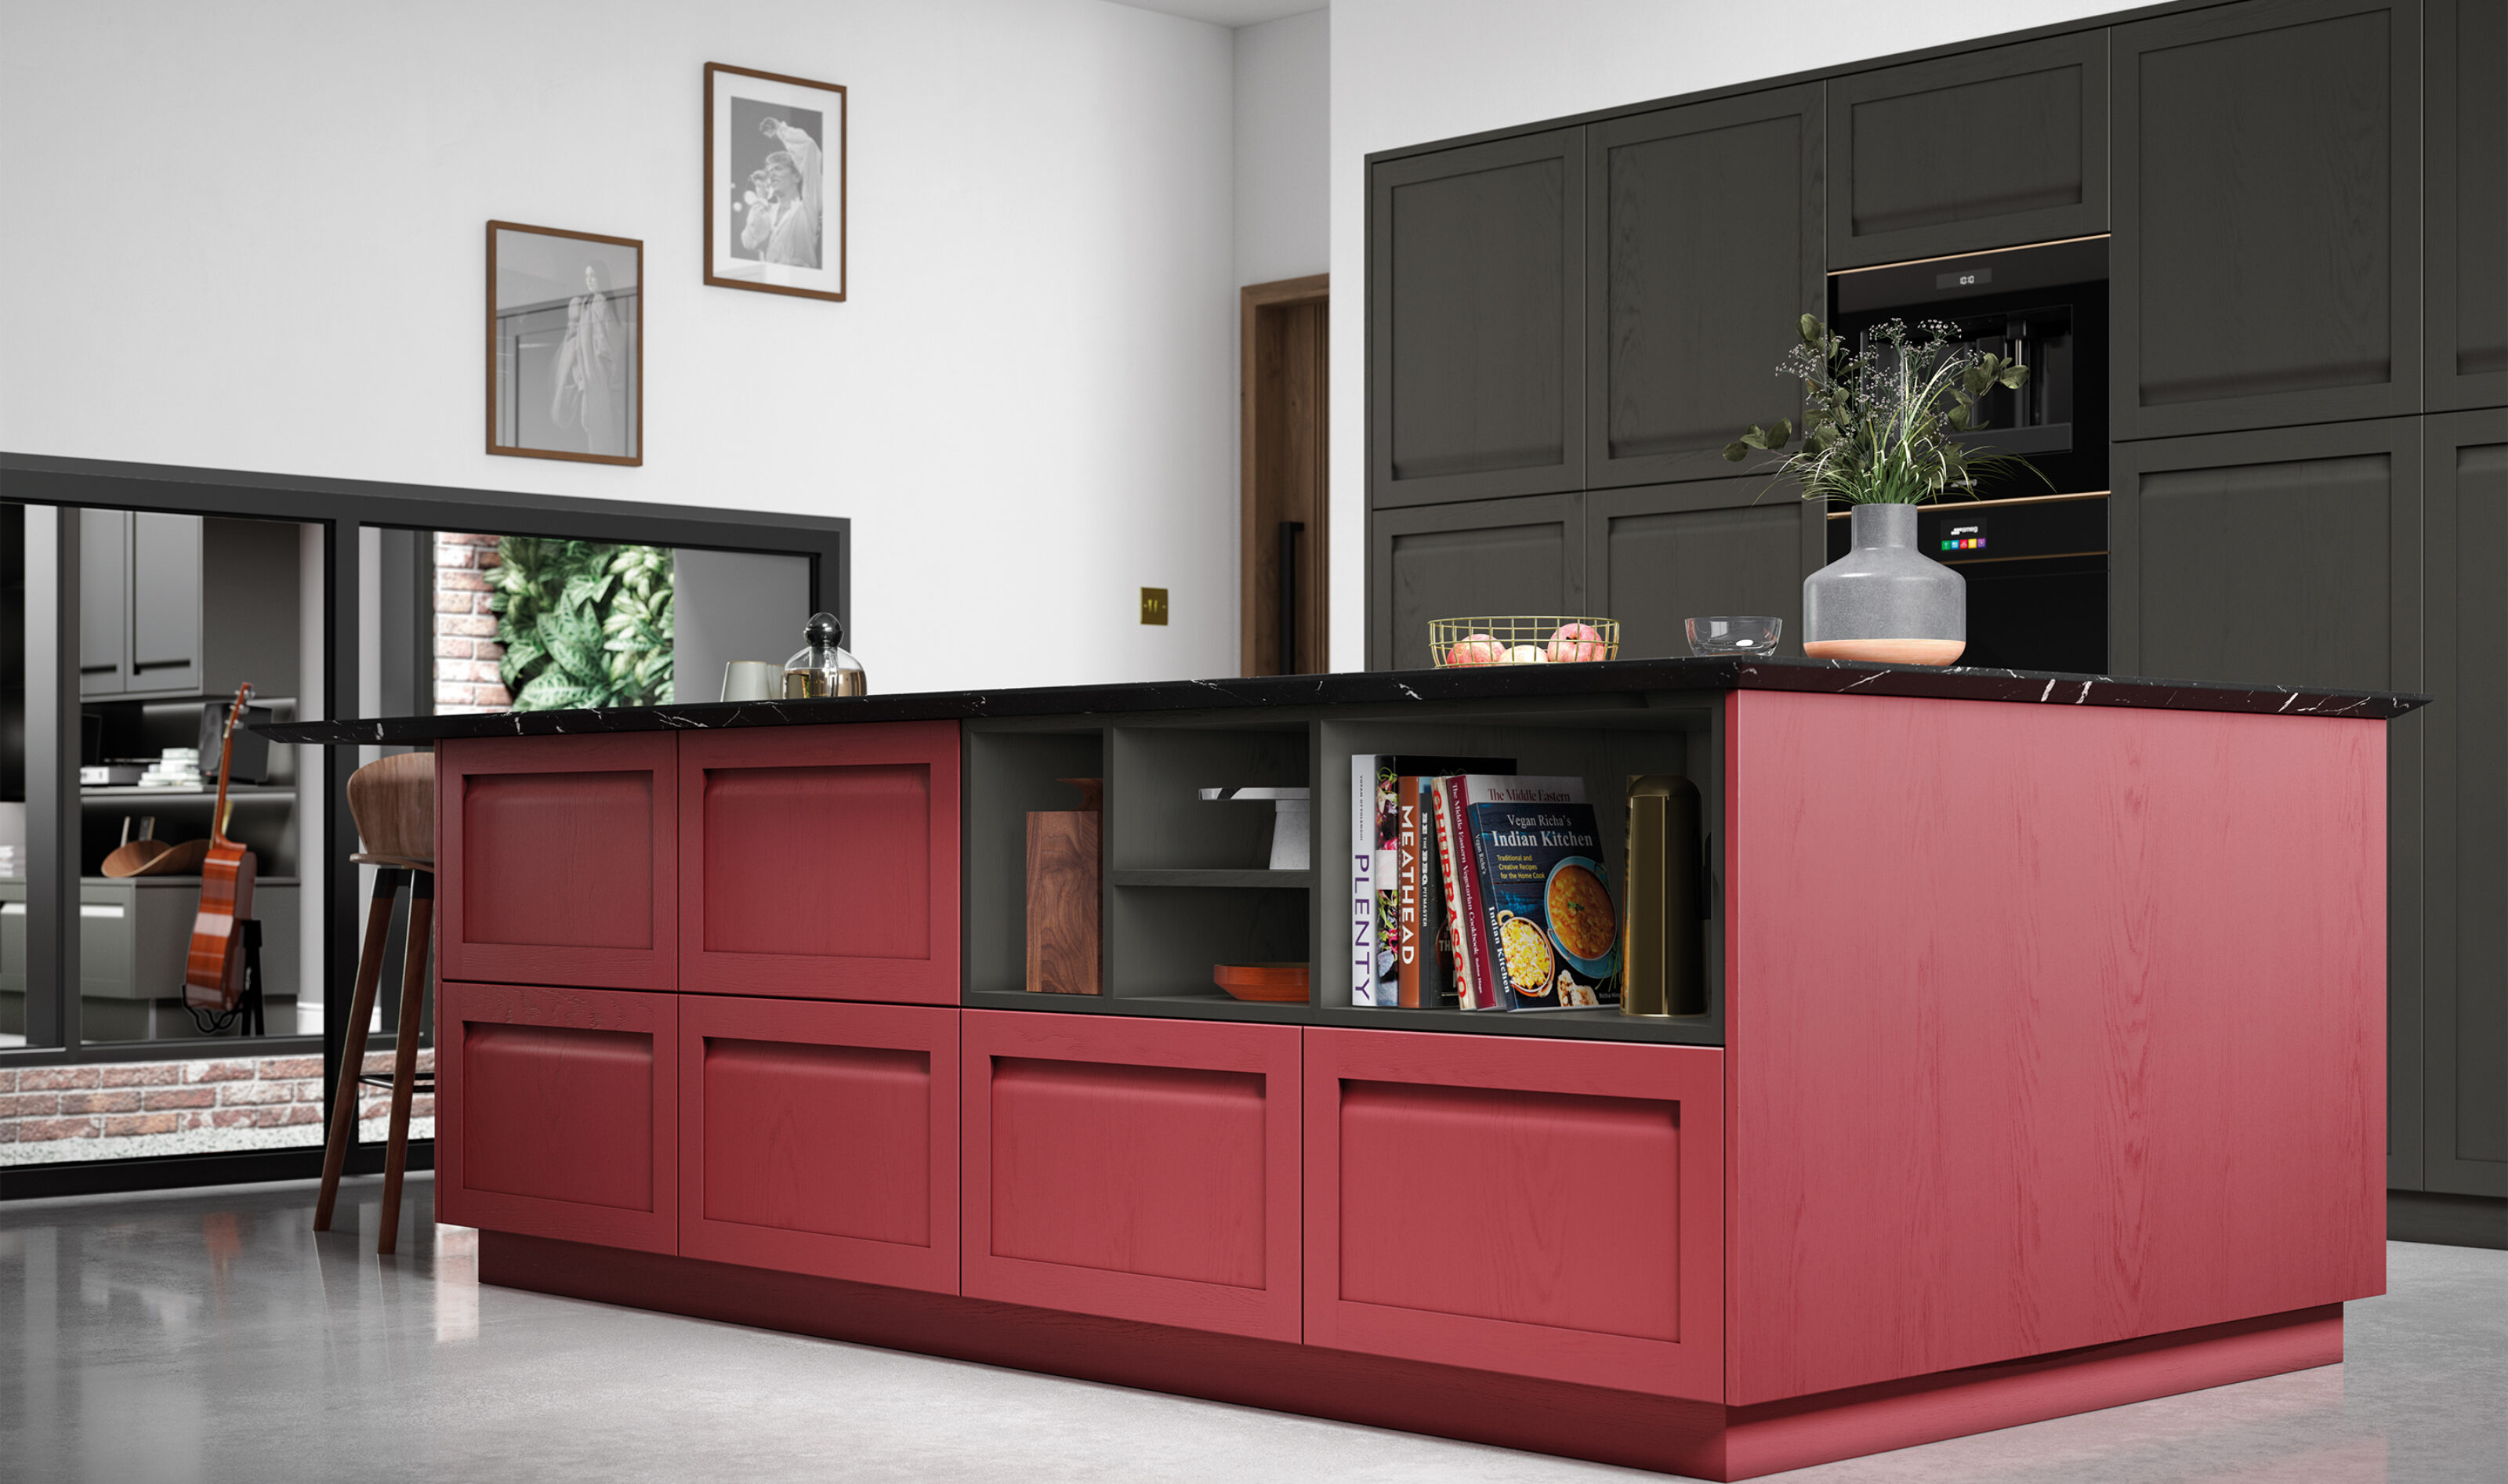 new image kitchen deisgn red kitchen